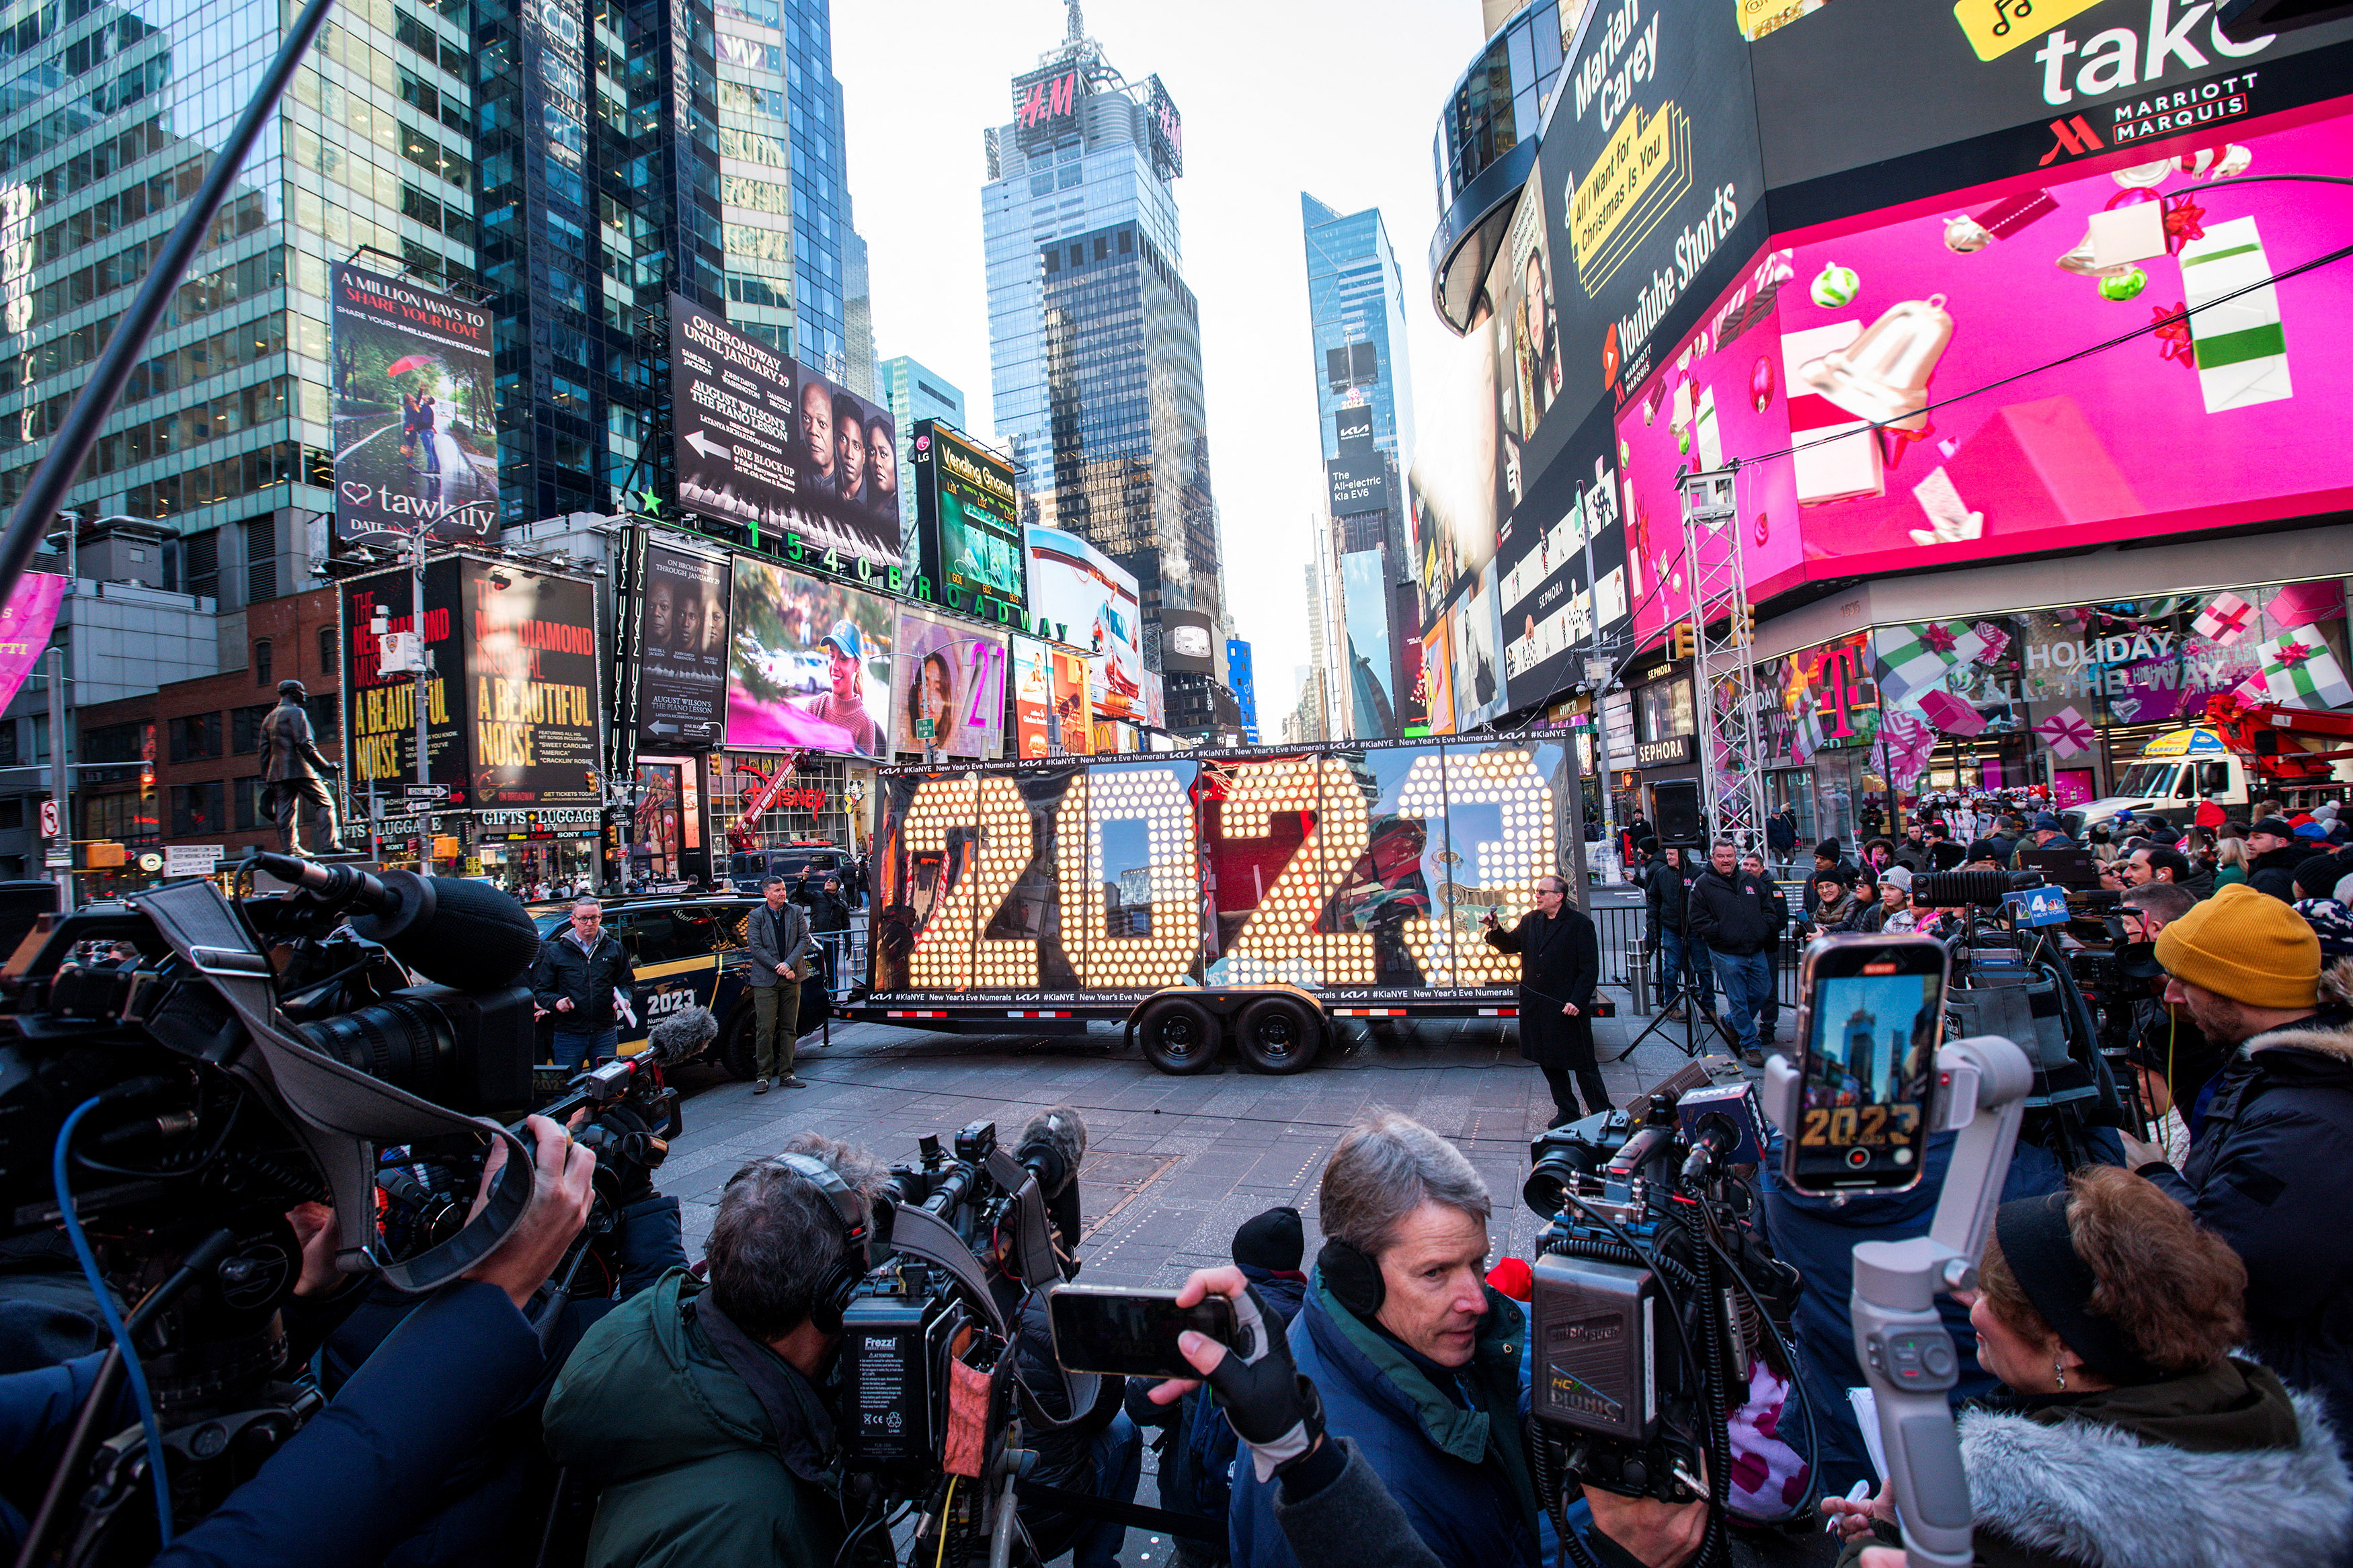 En Año Nuevo en Nueva York, las multitudes toman Times Square y hacen la cuenta regresiva esperando que comience el nuevo año (REUTERS/Eduardo Munoz)